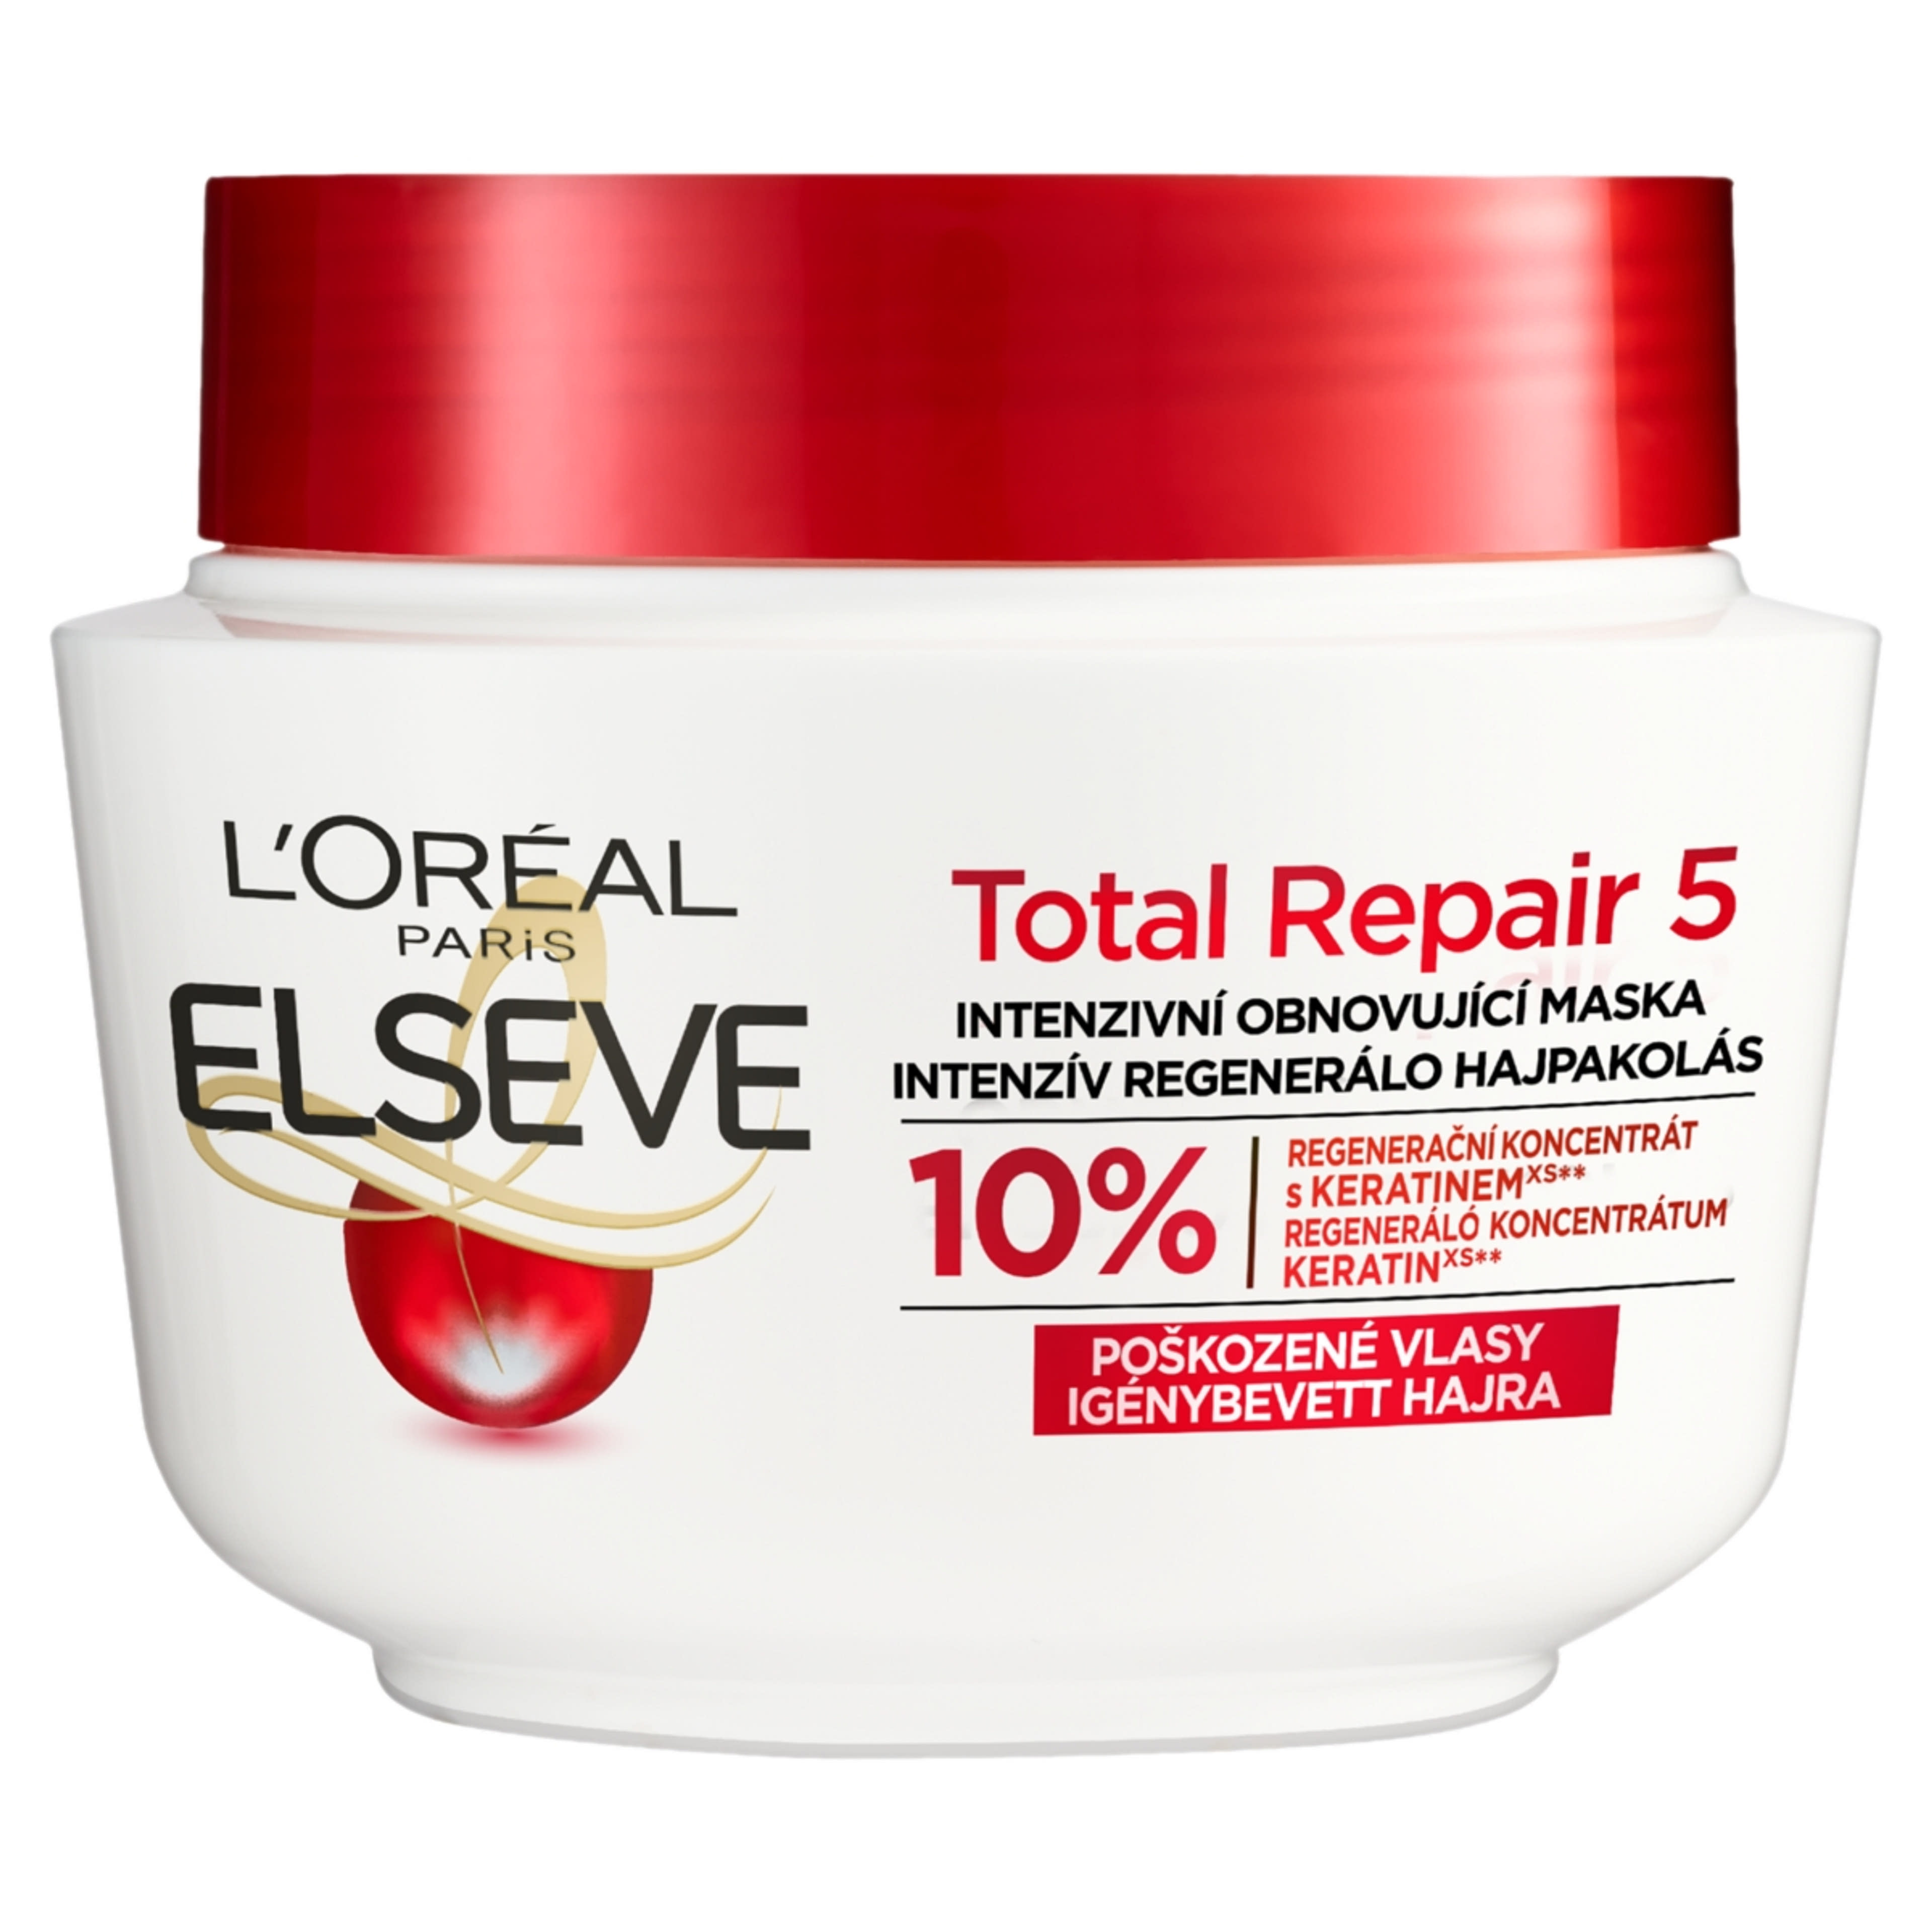 L'Oréal Paris Elseve Total Repair 5 regeneráló hajpakolás - 300 ml